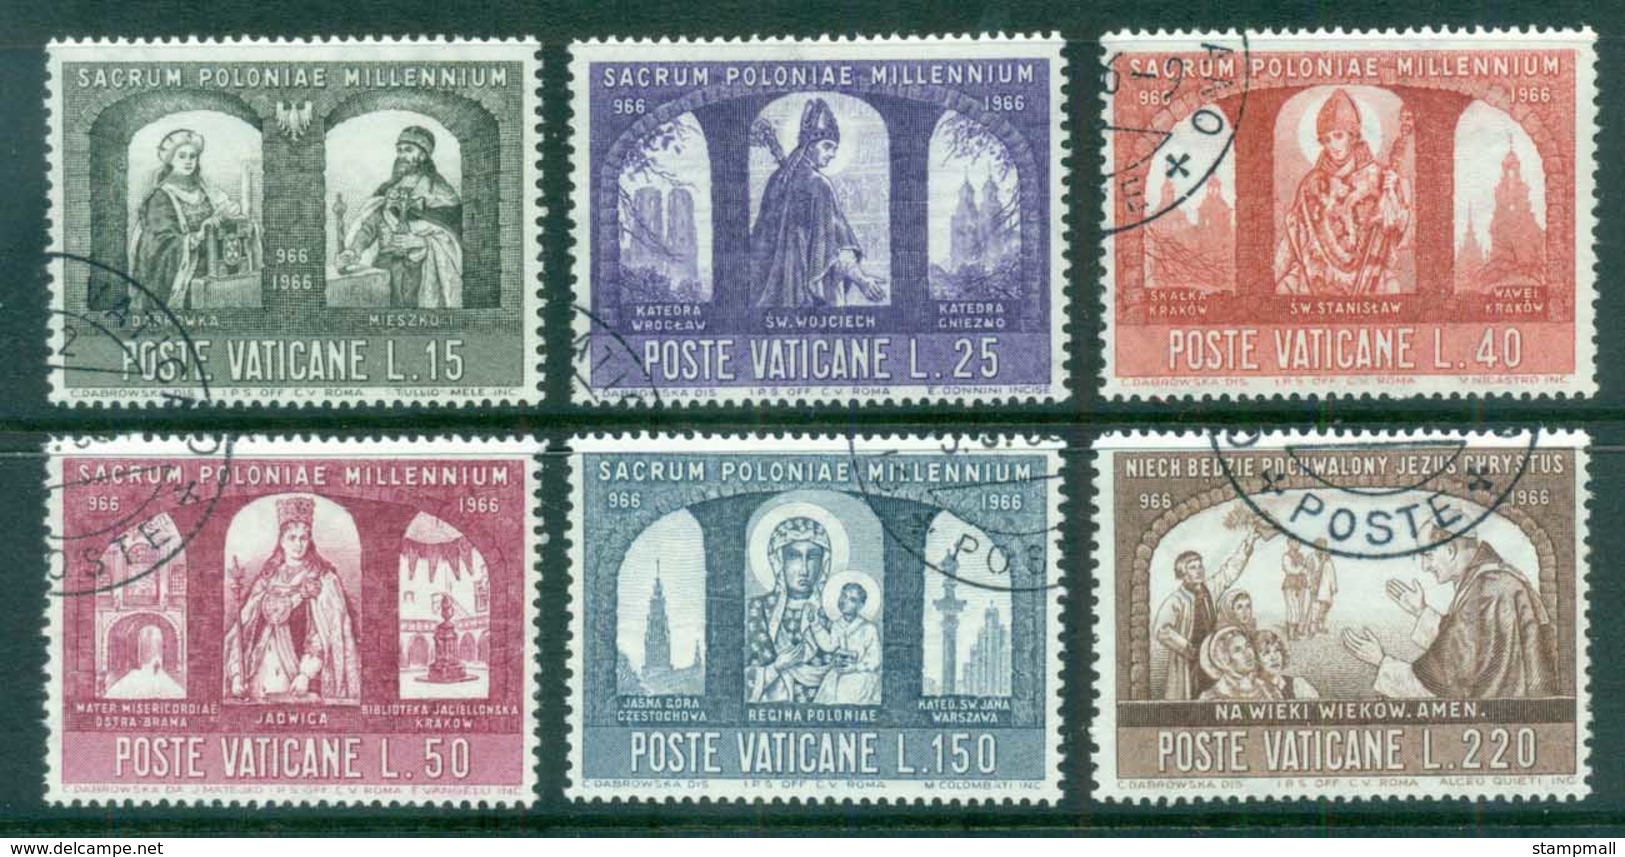 Vatican 1966 Civilisation Of Poland, Millenium CTO - Unused Stamps